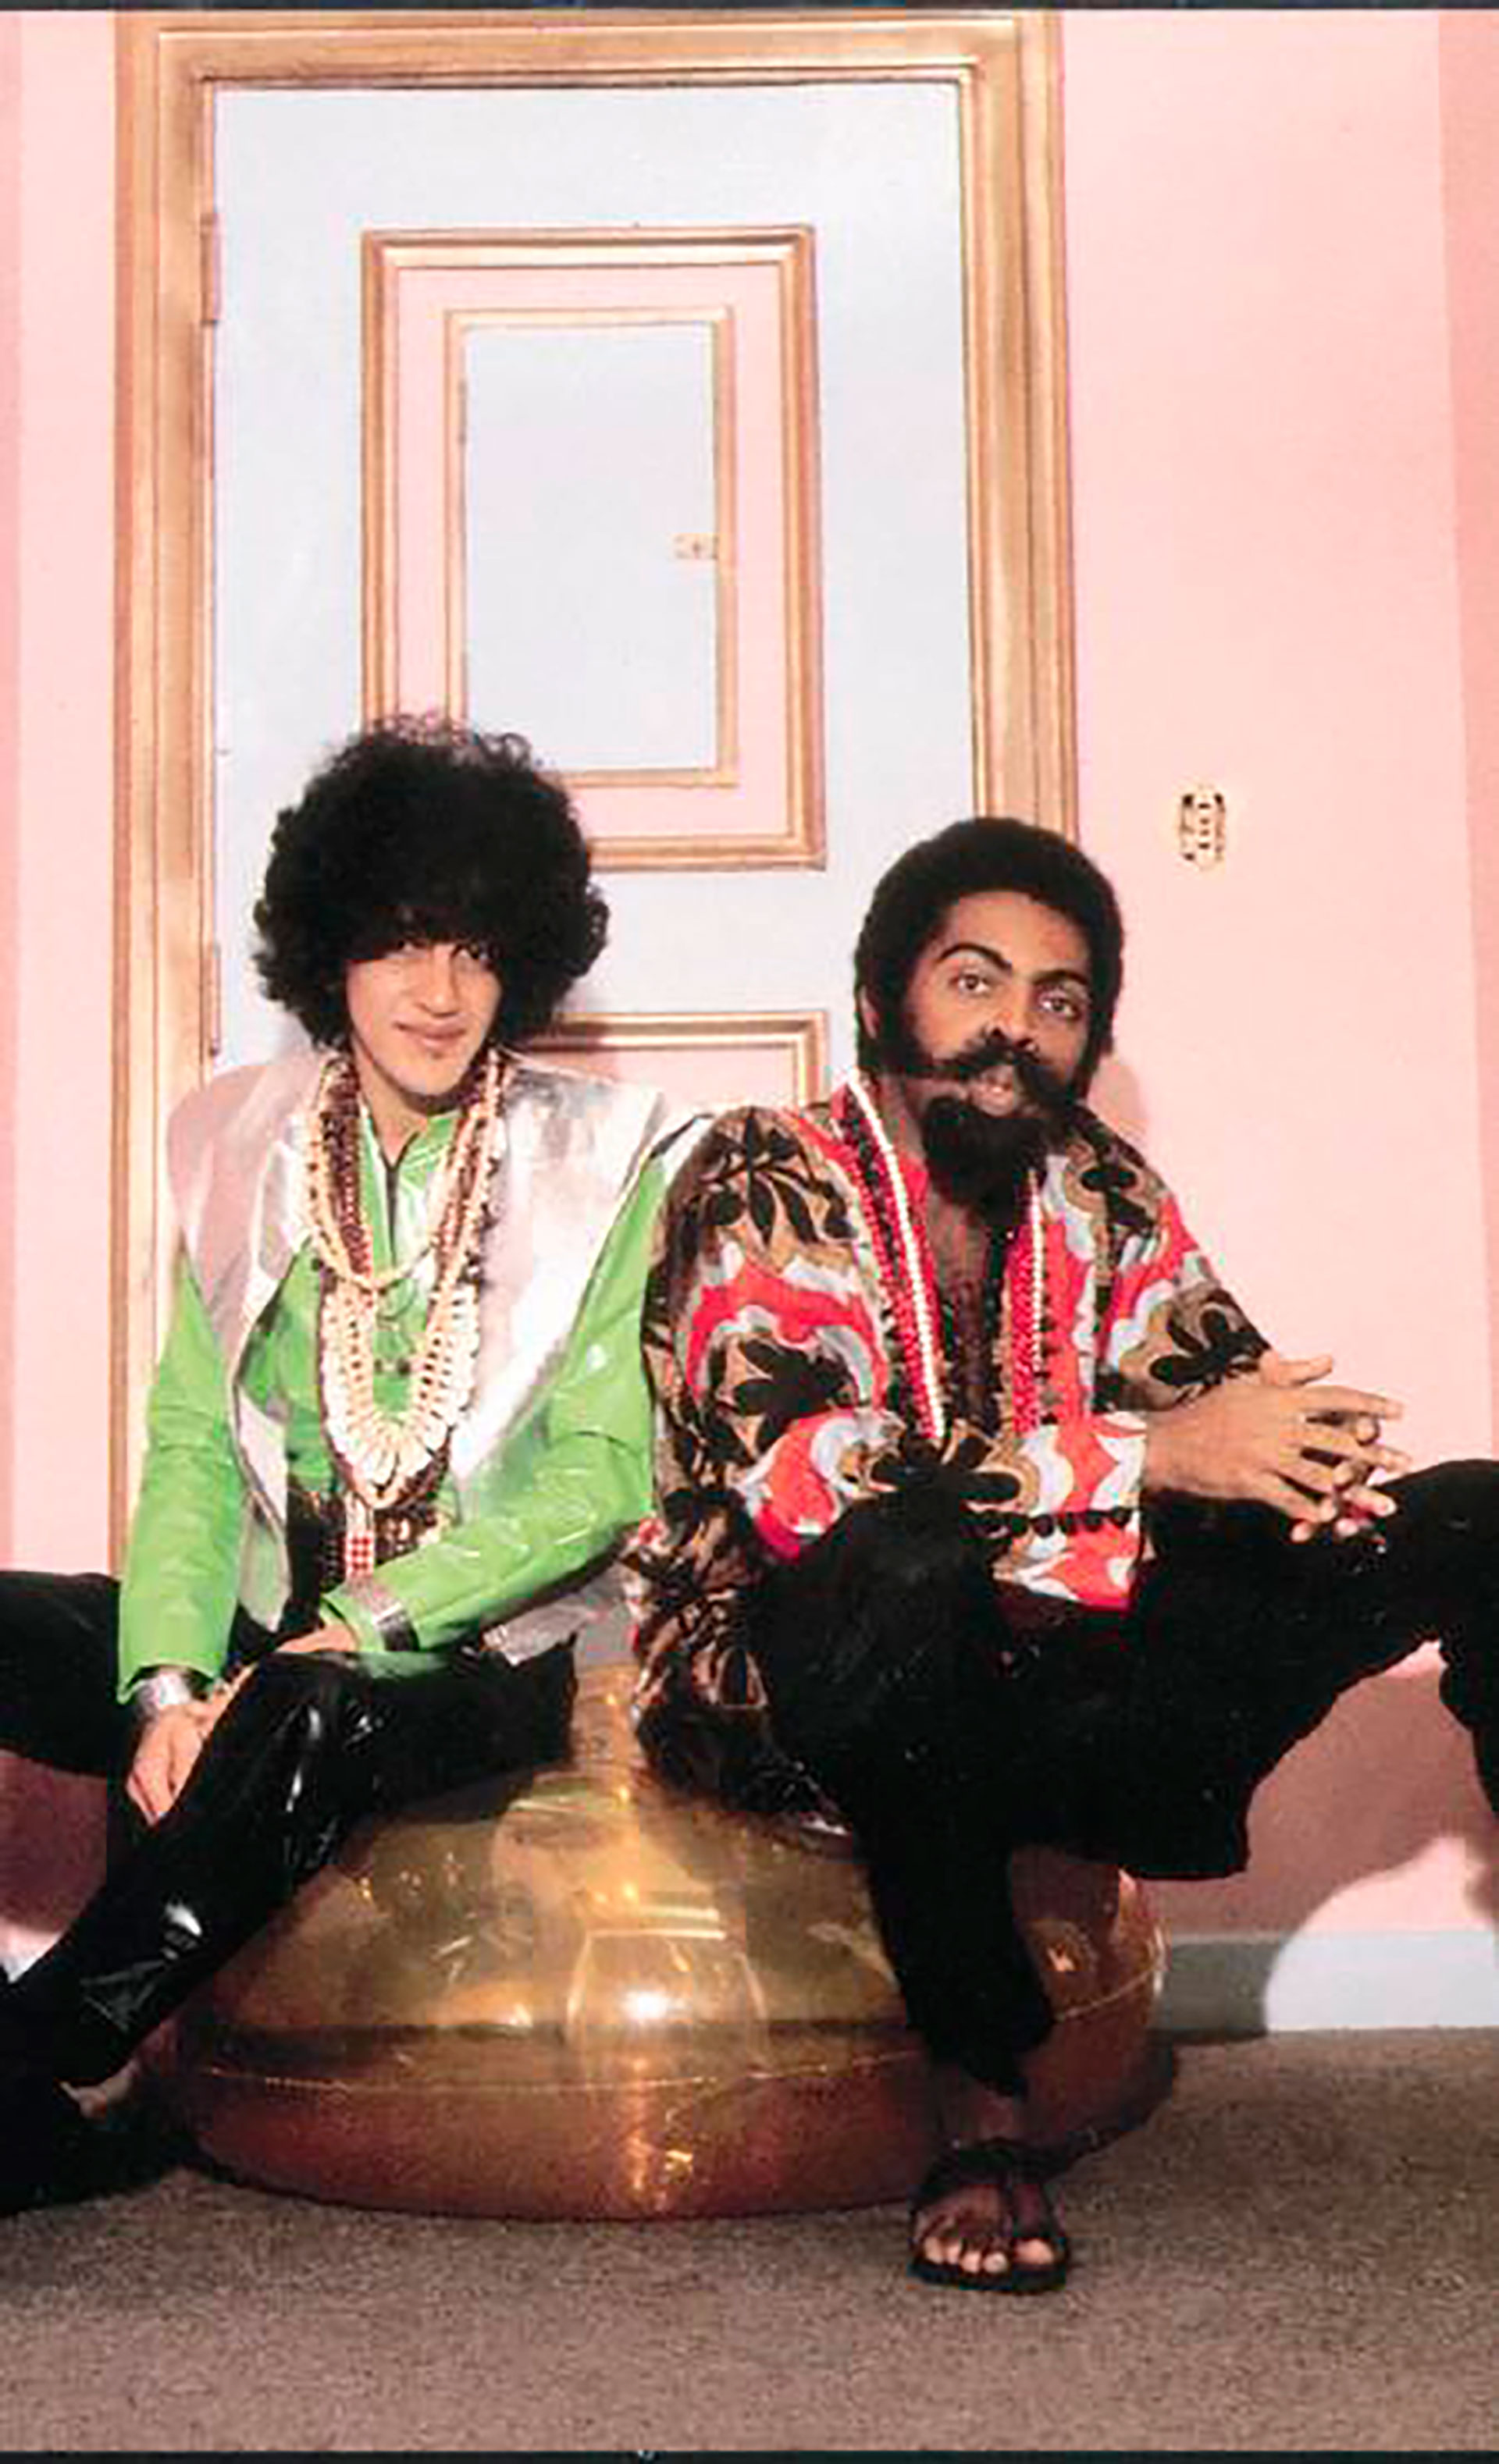 Imagen de Caetano Veloso y Gilberto Gil, dos de los grandes amigos de Gal Costa, en Londres 1972